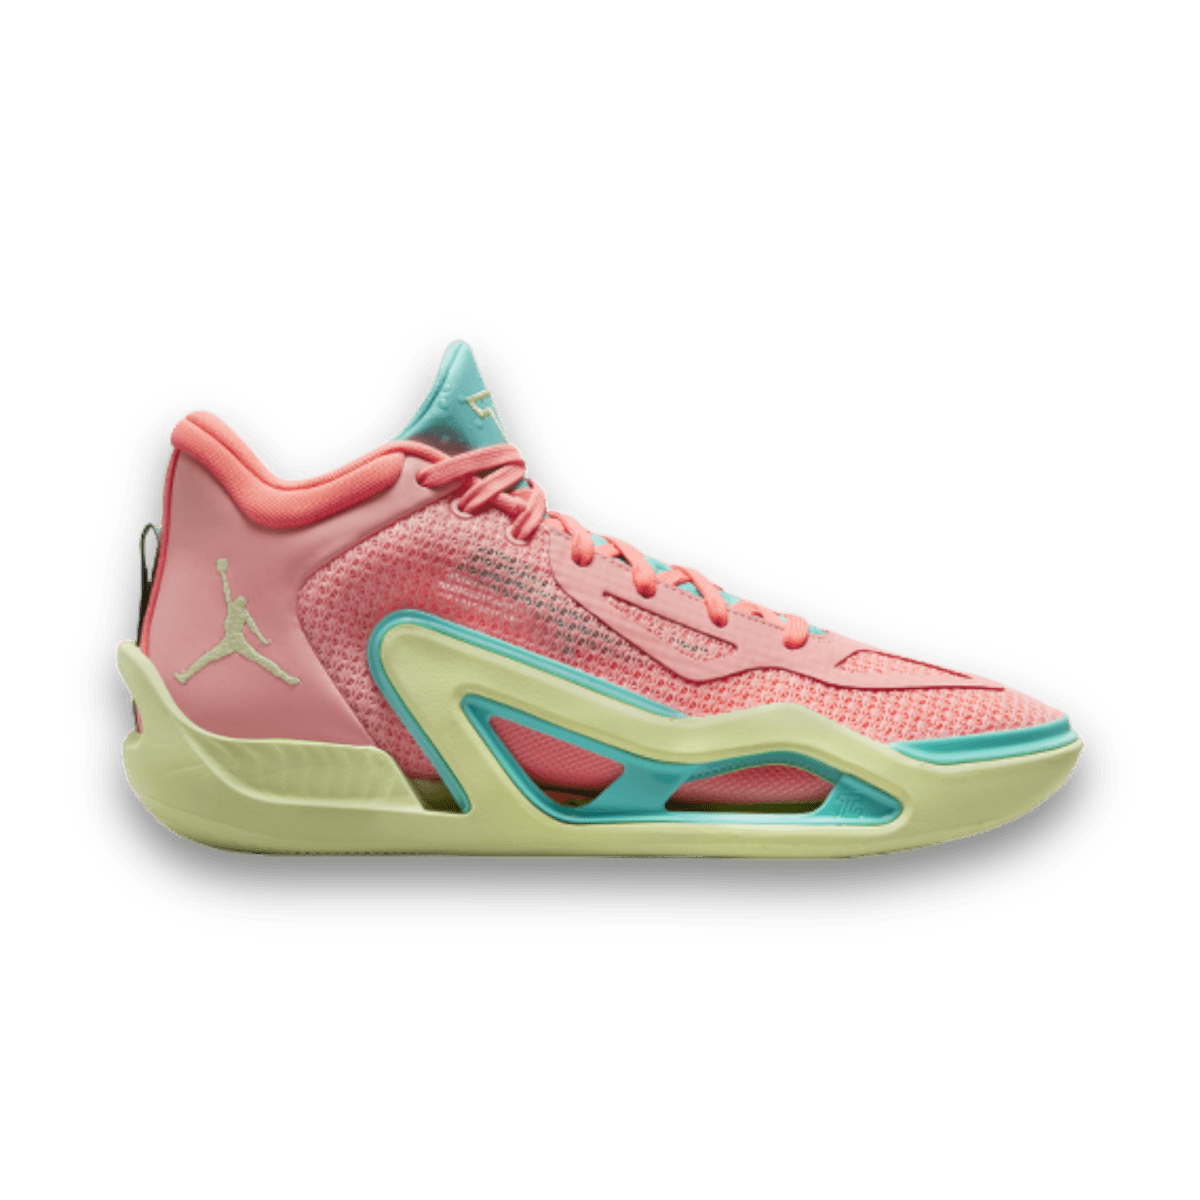 Tatum 1 "Pink Lemonade" - Mid Sneaker - Jawns on Fire Sneakers & Streetwear